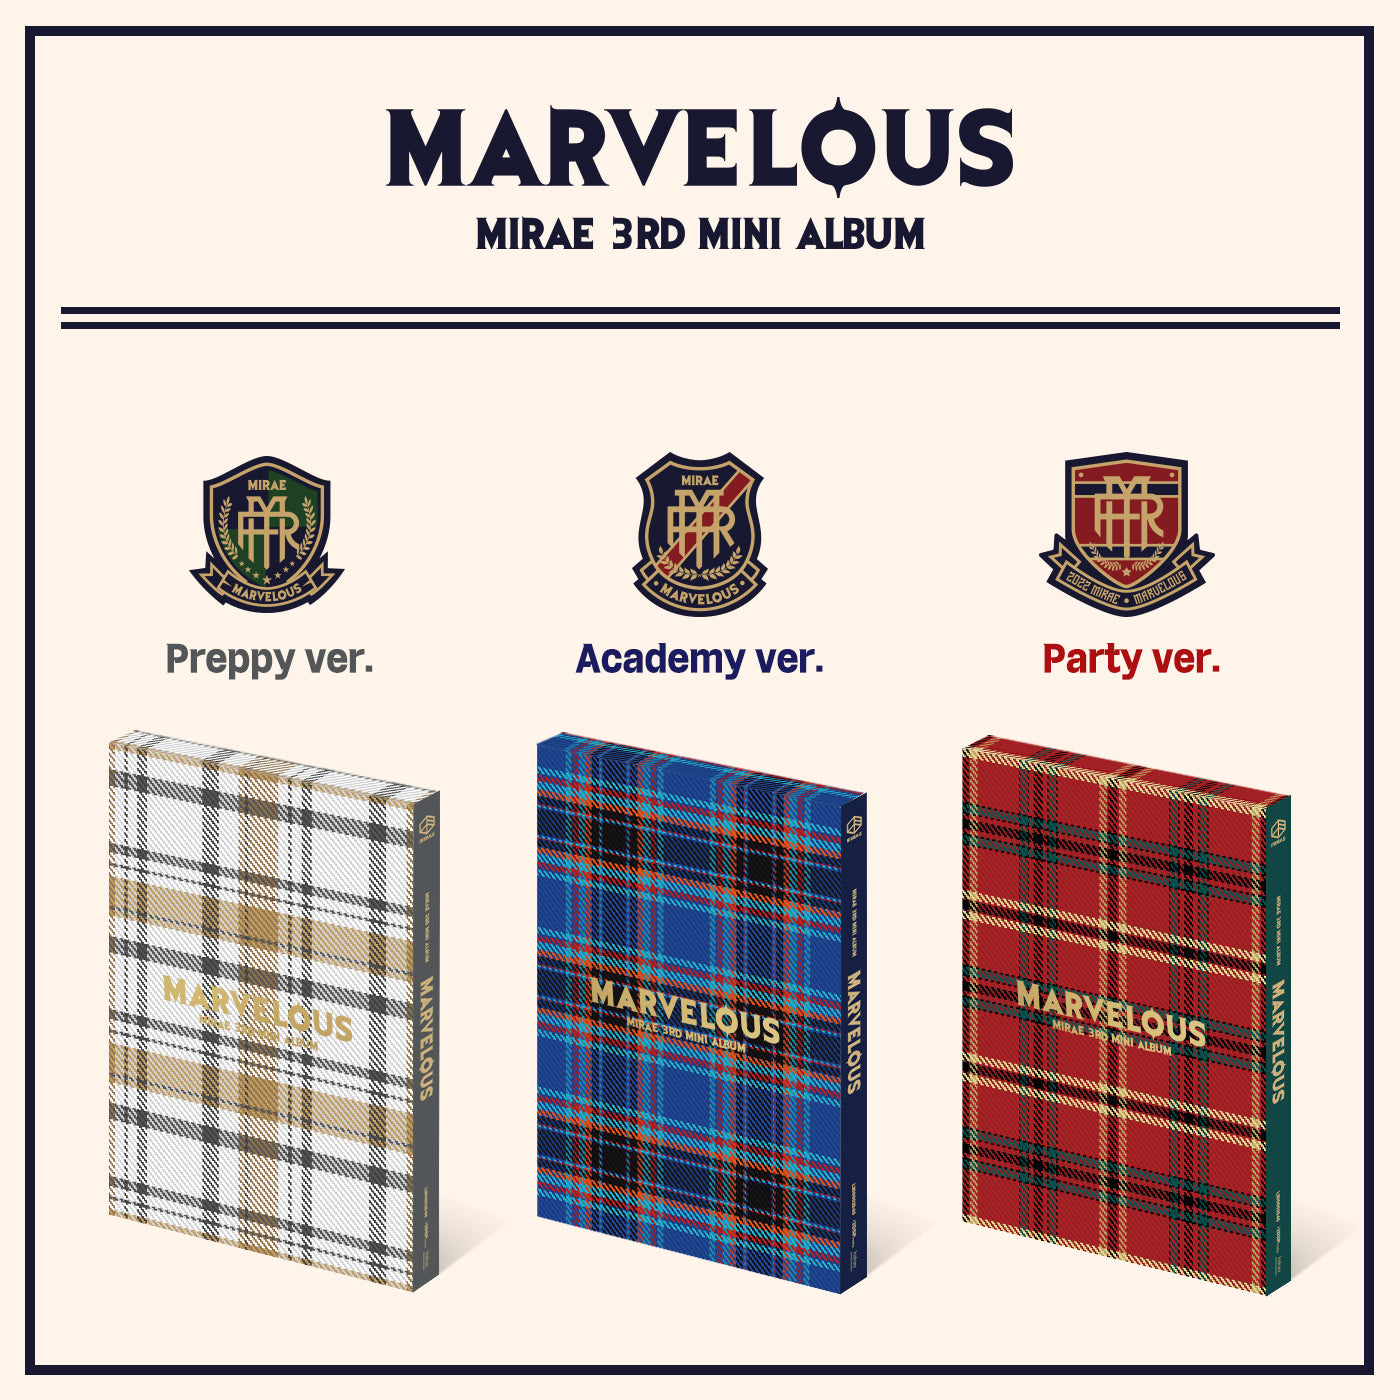 MIRAE 3rd Mini Album Marvelous